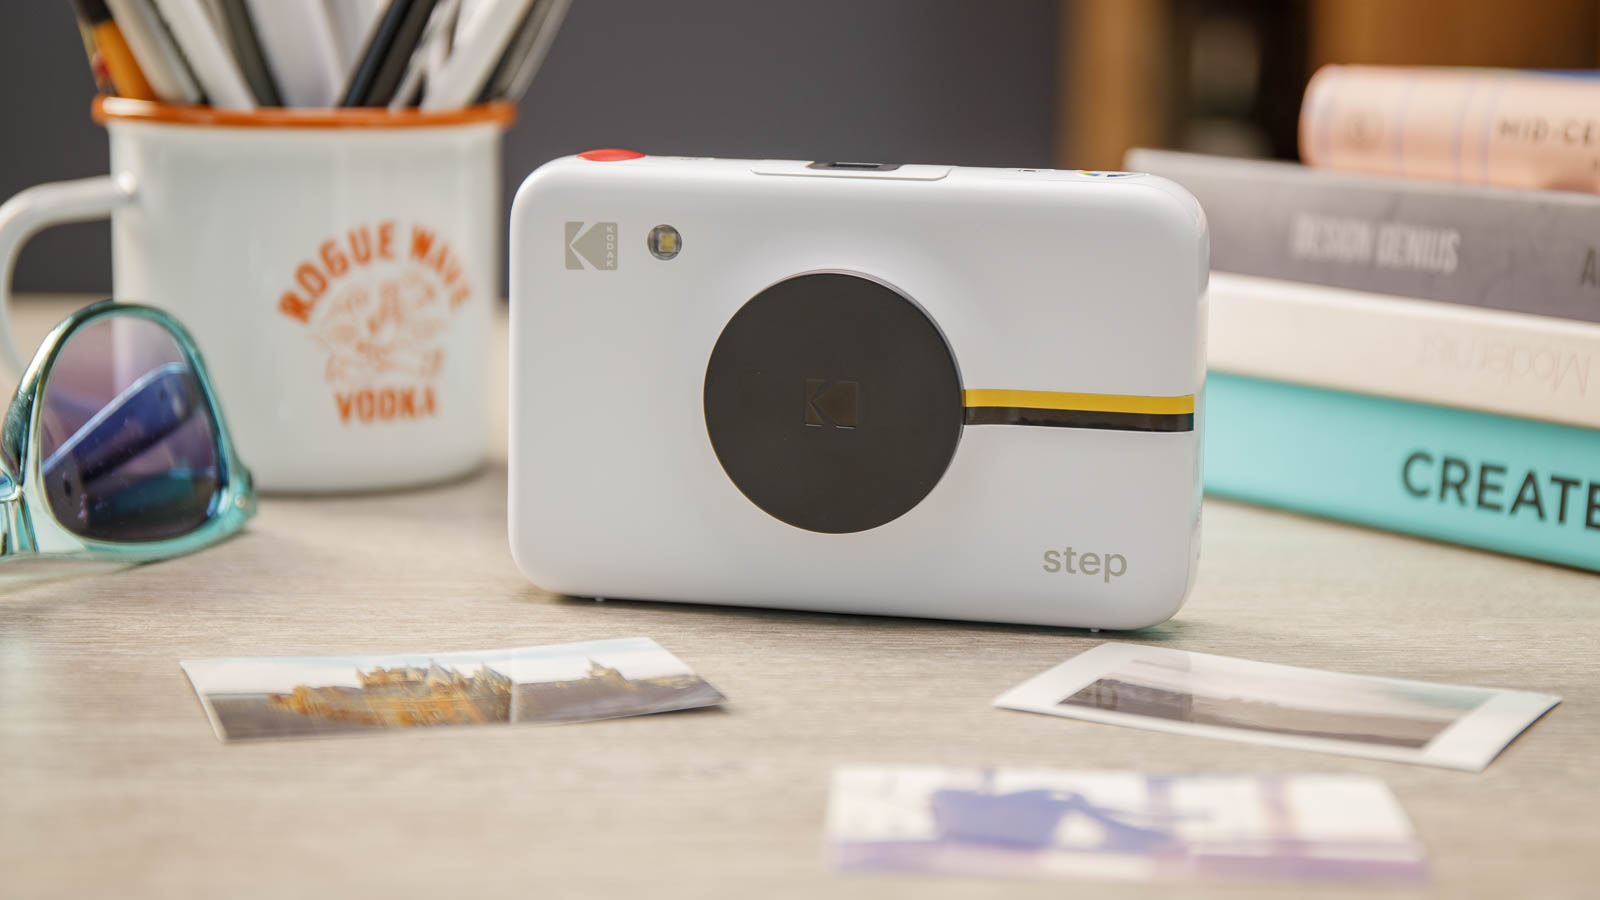 Камера моментальной печати Kodak Step с закрытой крышкой объектива